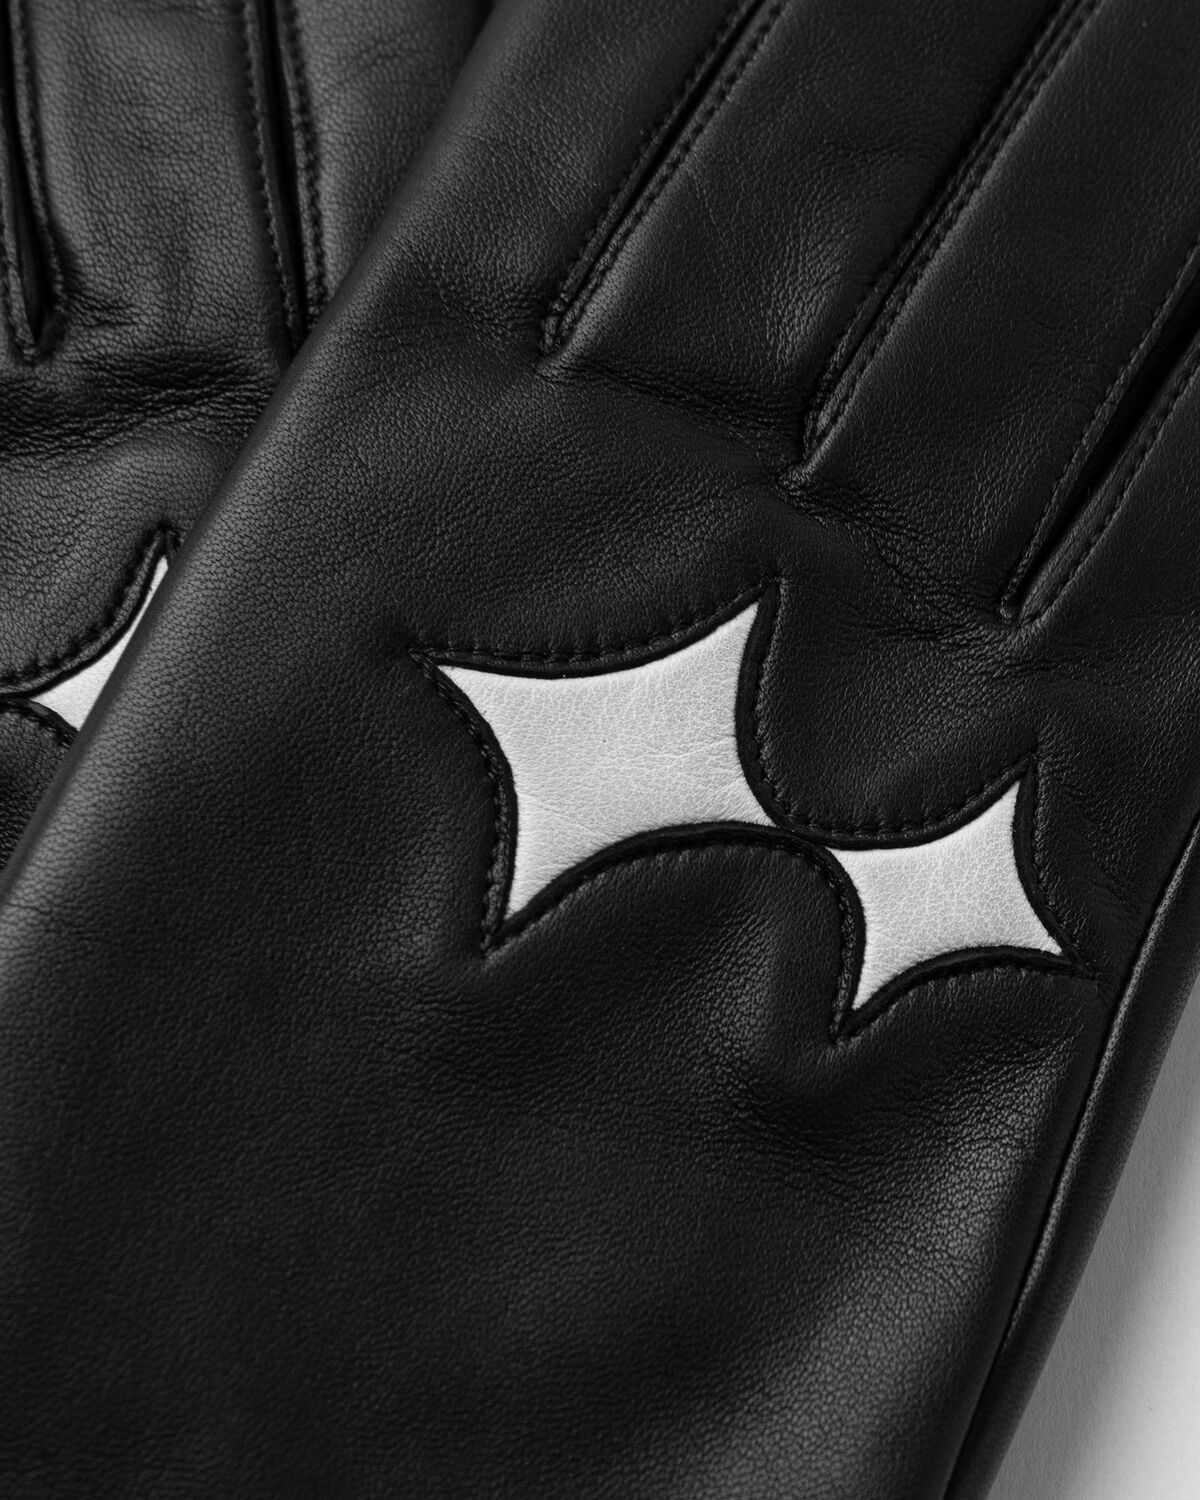 Bstn Brand Roeckl X Bstn Brand Touch Gloves Men Black - Mens - Gloves